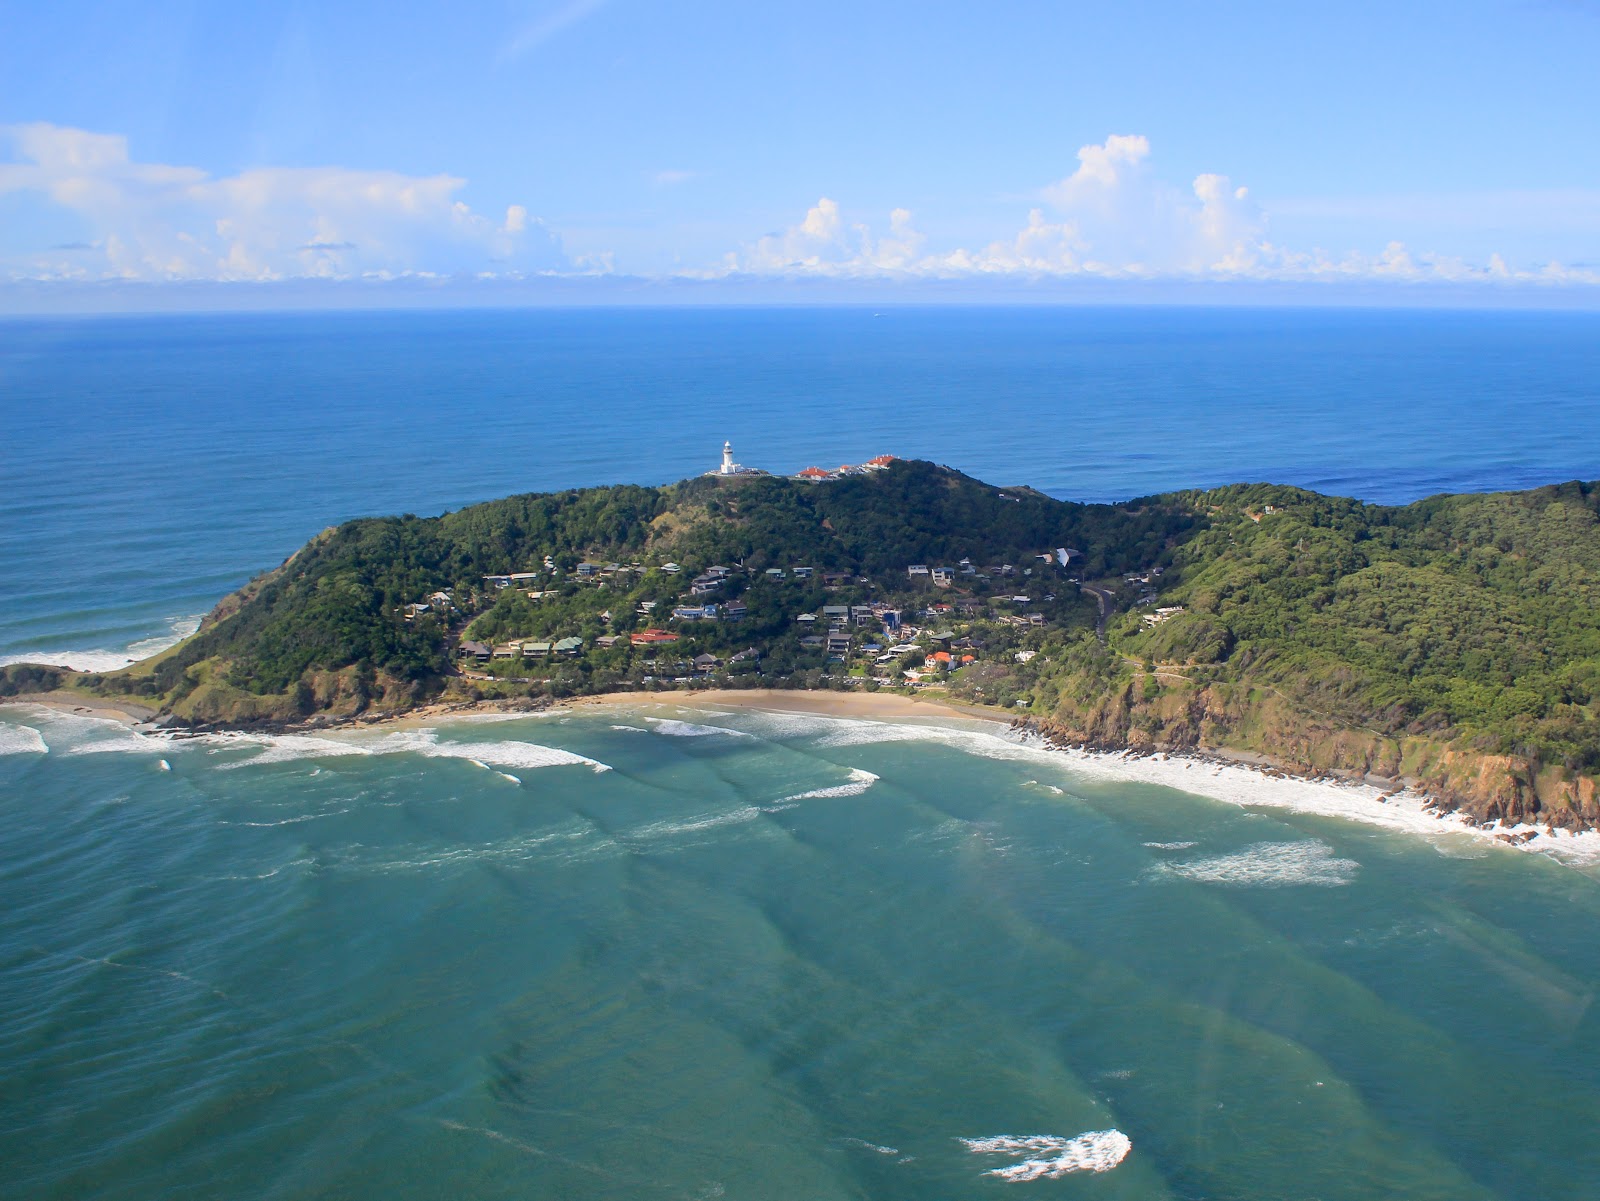 Zdjęcie Wategos Beach - popularne miejsce wśród znawców relaksu